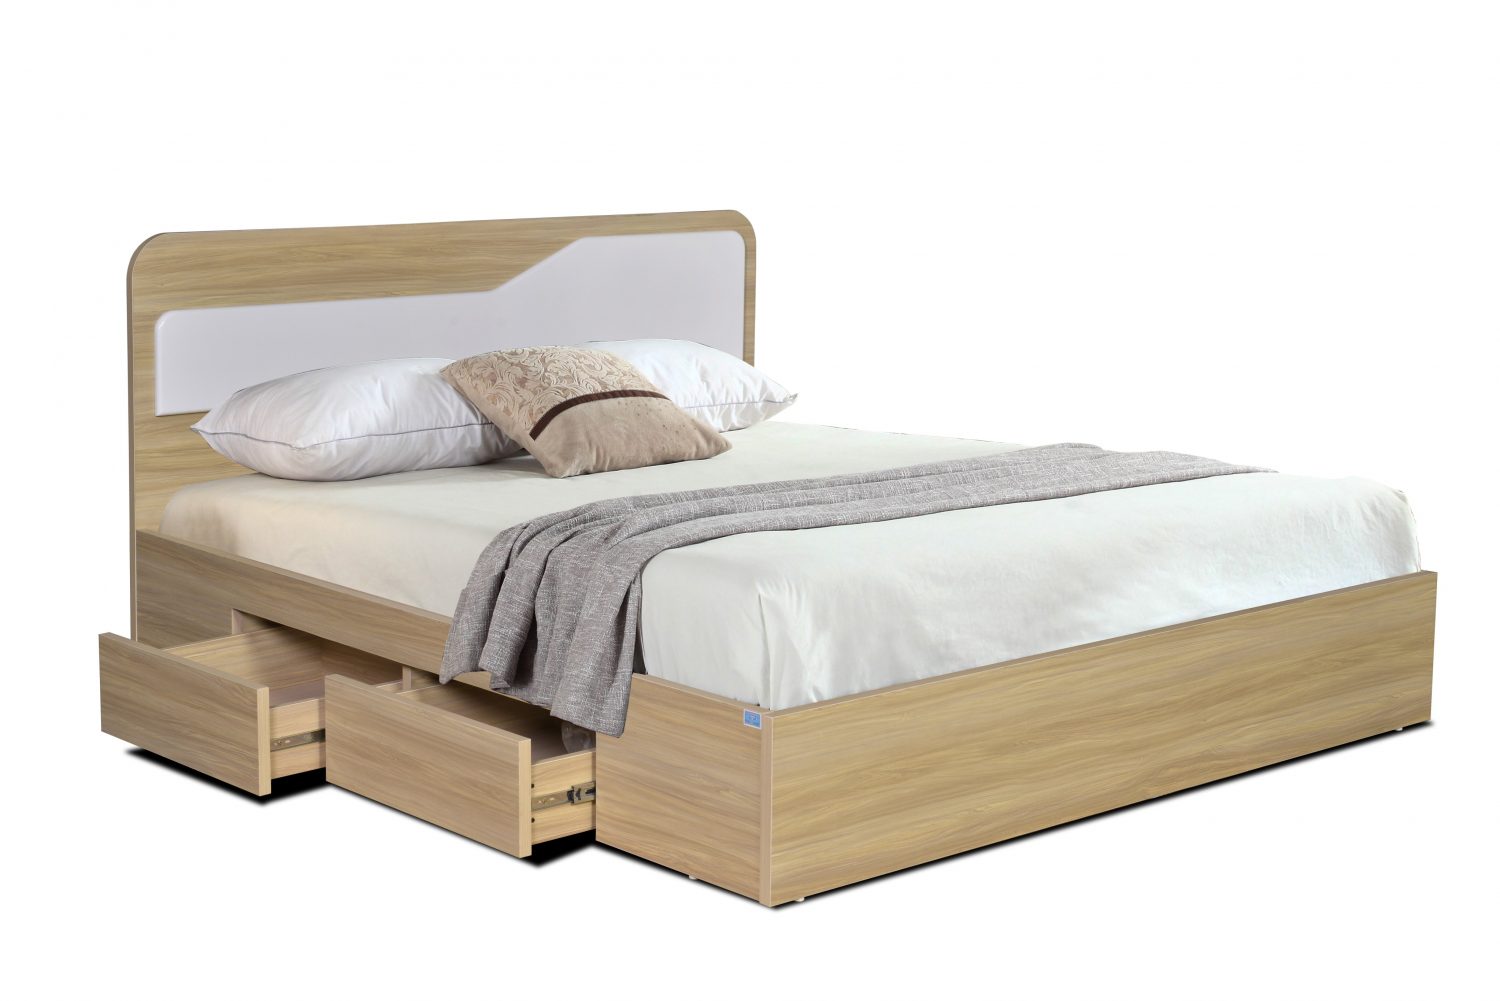 Giường ngủ  cao cấp có 02 ngăn kéo để đồ. Xu hướng thiết kế